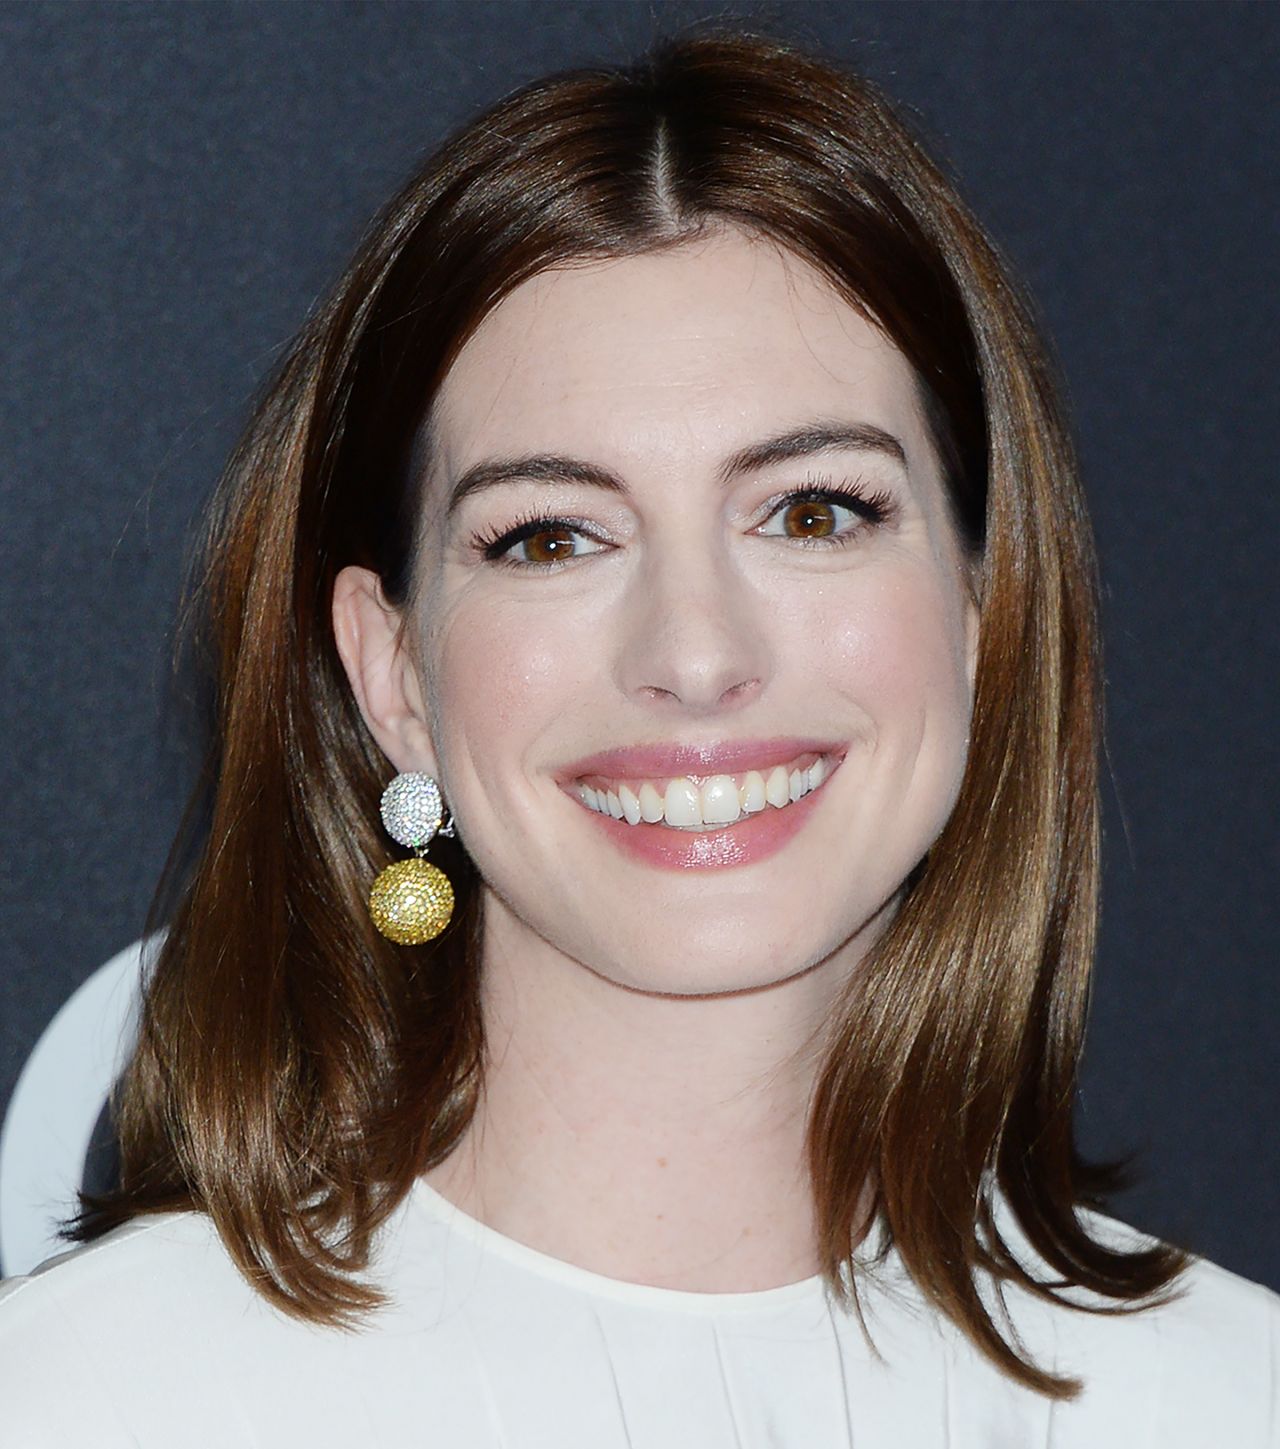 Anne Hathaway - 2018 Hollywood Film Awards in LA
